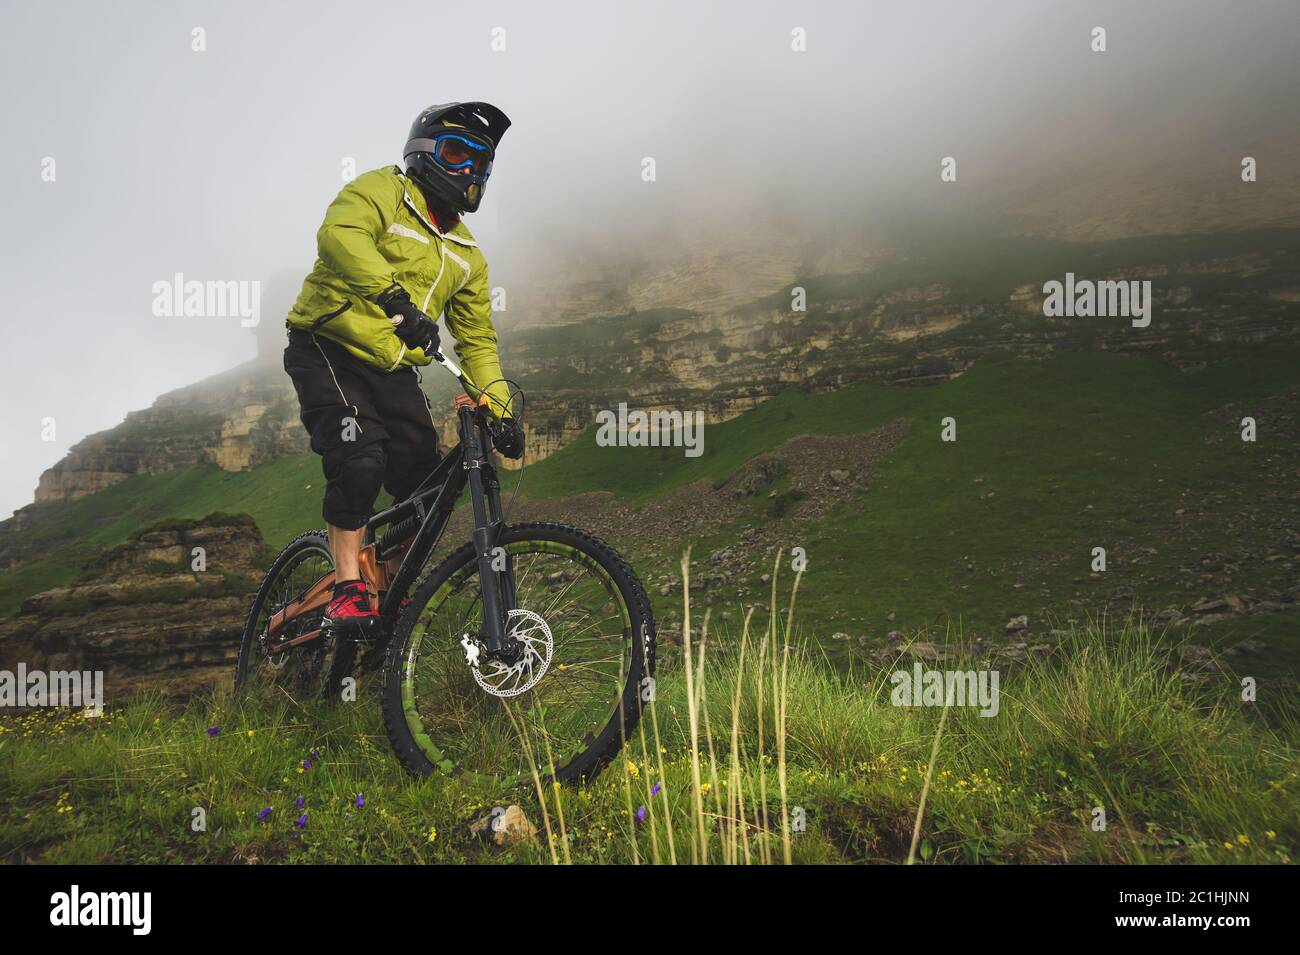 Ein erwachsener mtb-Radfahrer auf einem Mountainbike am Fuße einer Klippe, umgeben von grünem Gras. Niedrige Wolken. Nordkaukasus. Russland Stockfoto